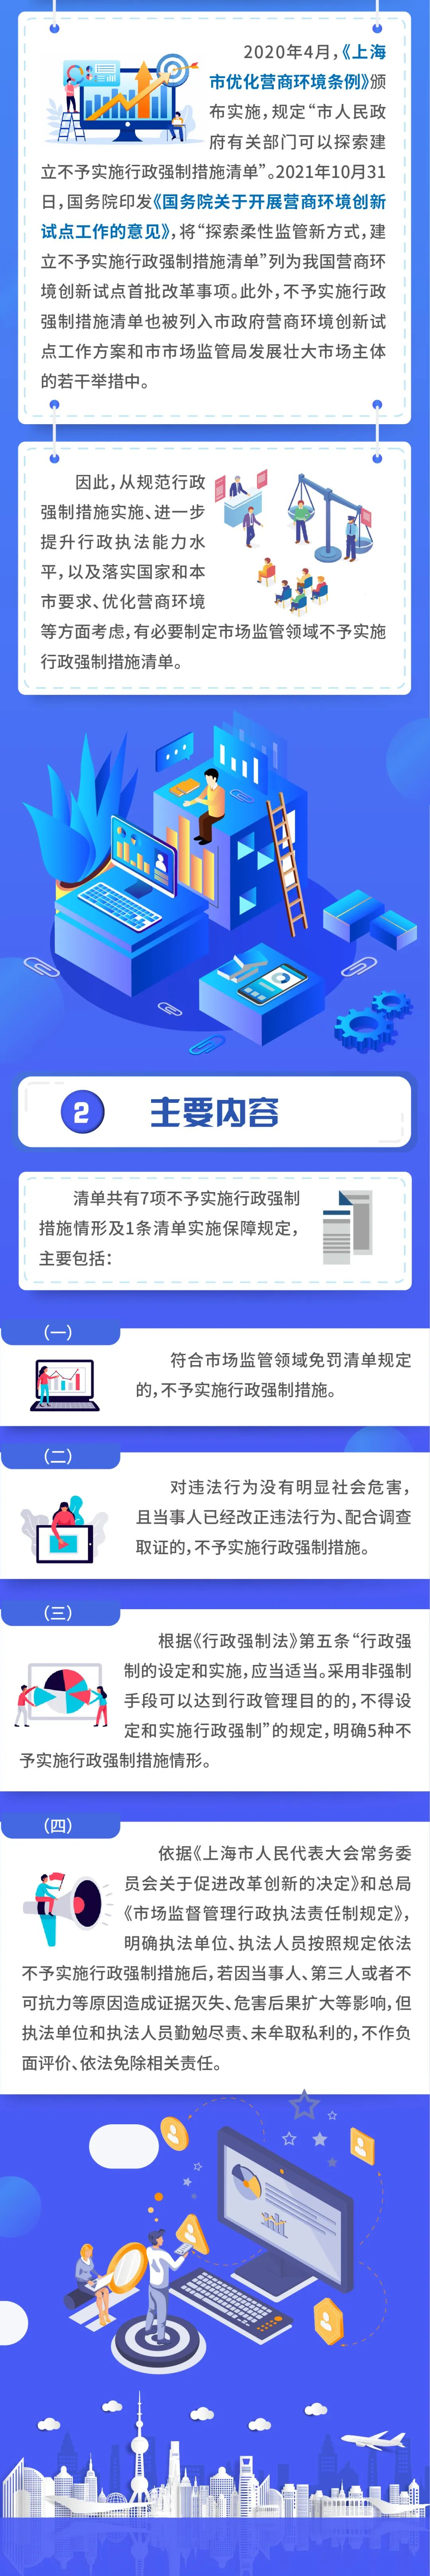 【最新】上海出台清单，明确市场监管执法中7类情形不实施查封、扣押等强制措施插图3